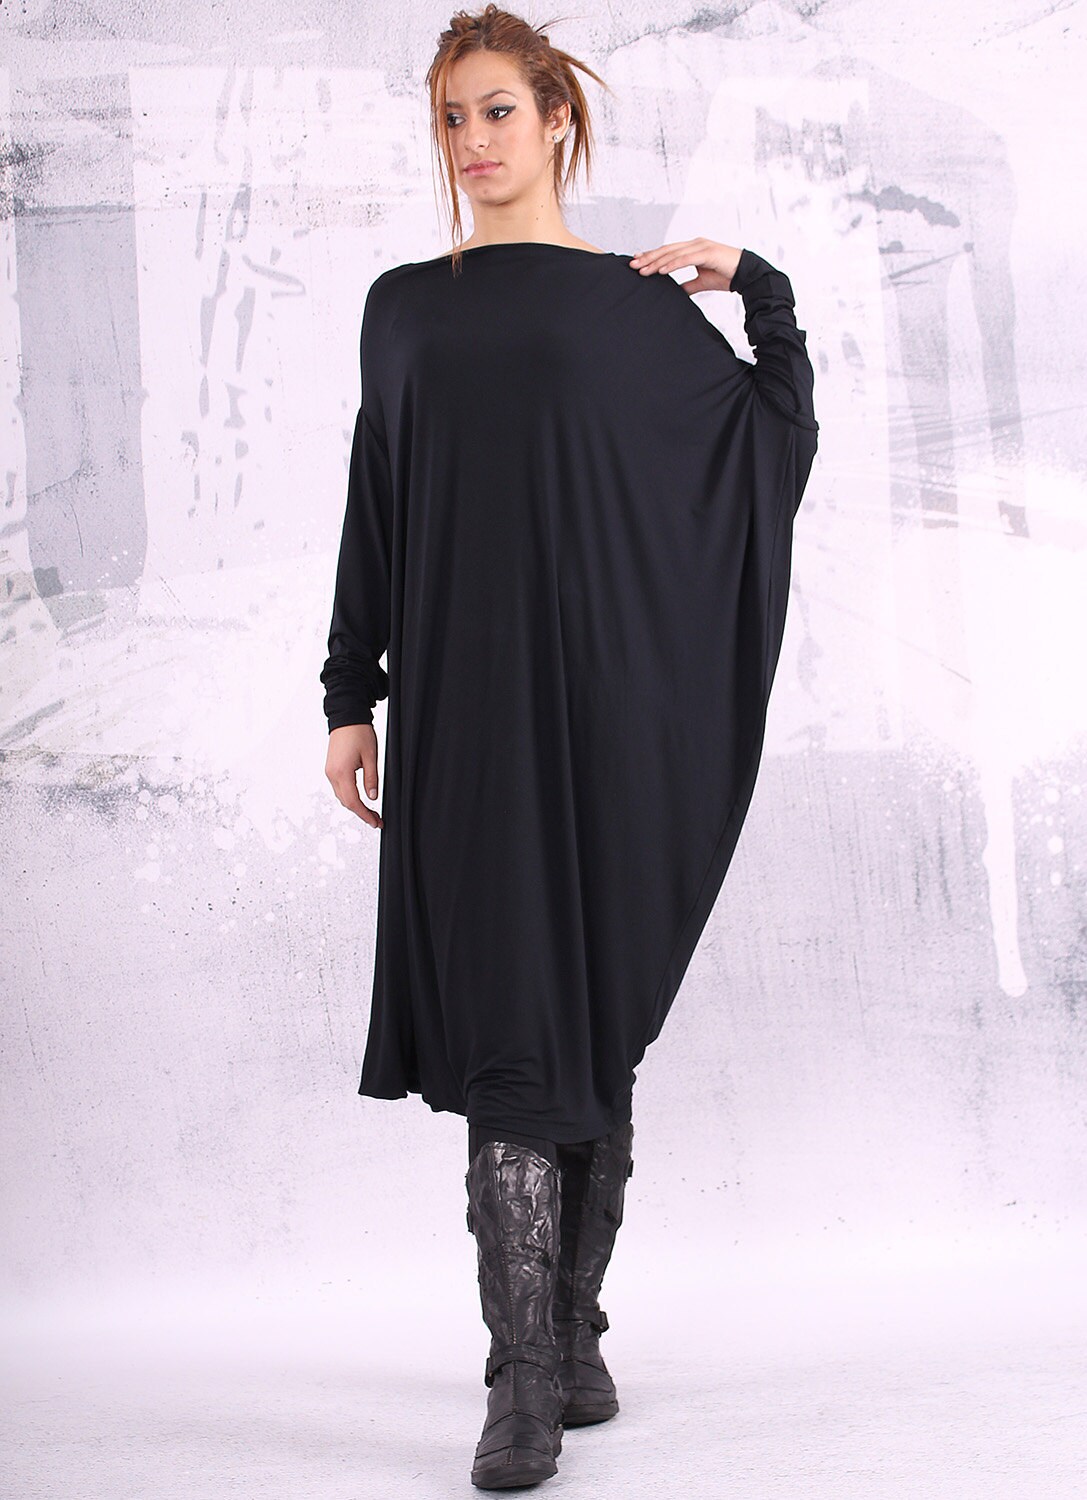 Black maxi dress extravagant dress/ asymmetrical tunic dress